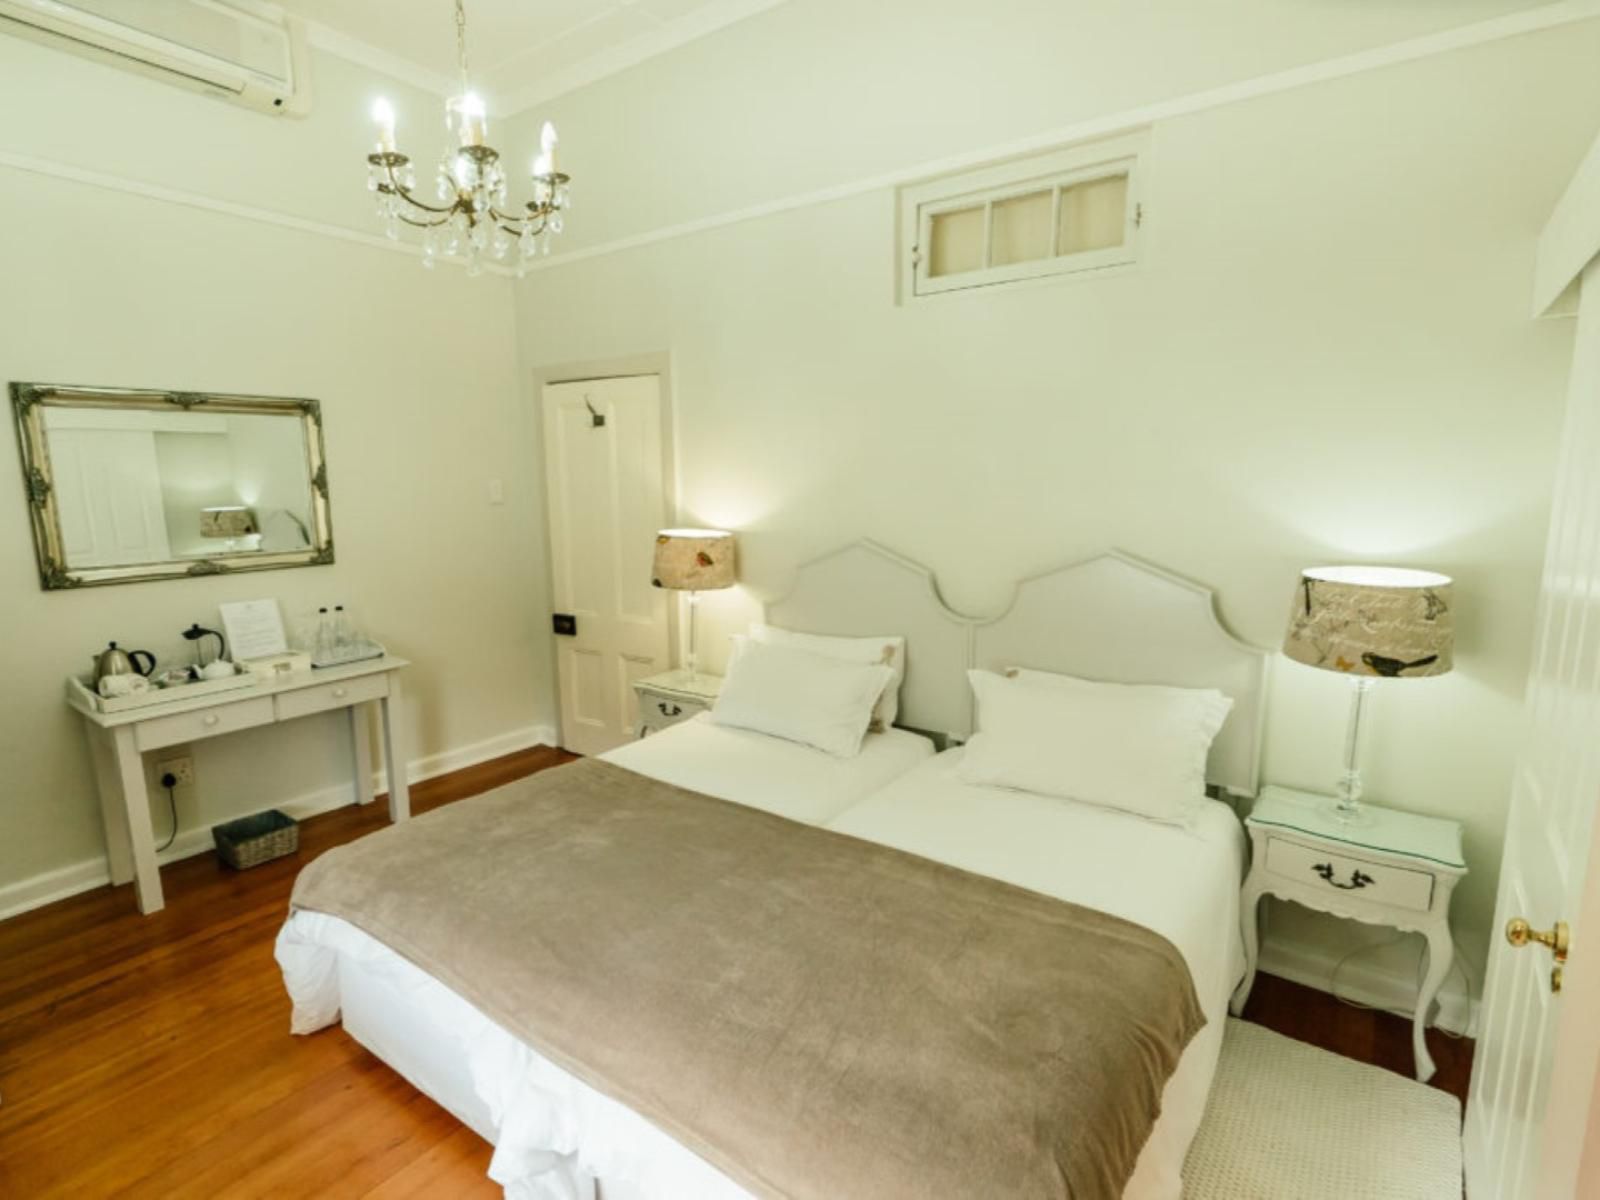 Kloovenburg Pastorie Riebeek Kasteel Western Cape South Africa Bedroom